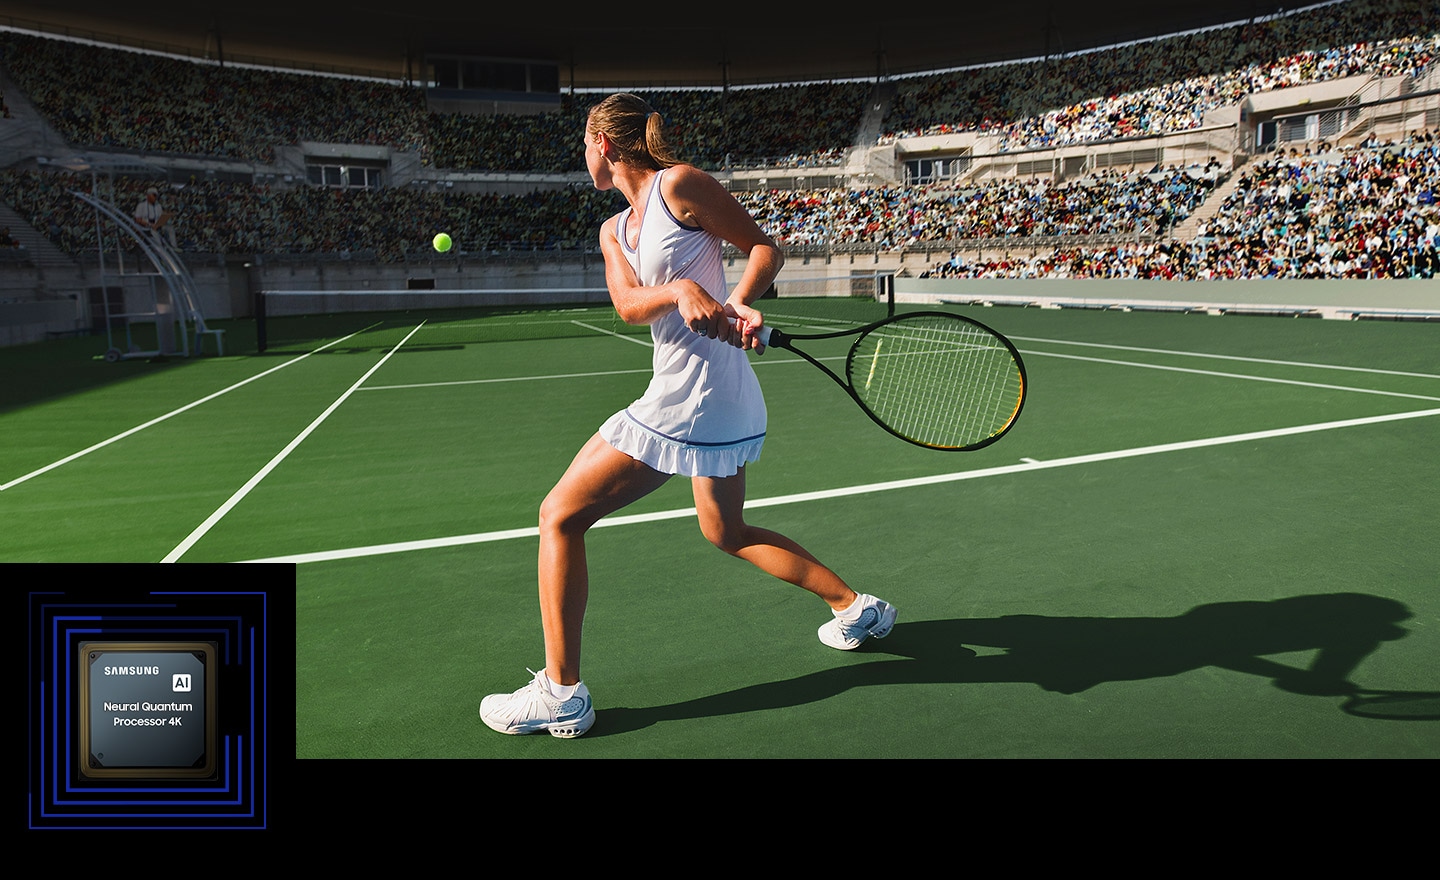 يتم تمييز عناصر مختلفة من مباراة التنس بما في ذلك كرة التنس وملعب التنس الجانبي ومضرب التنس والجمهور على الشاشة. يُظهر قدرة معالج Samsung AI Neural Quantum Processor 4K على تحسين الجودة في الوقت الفعلي.